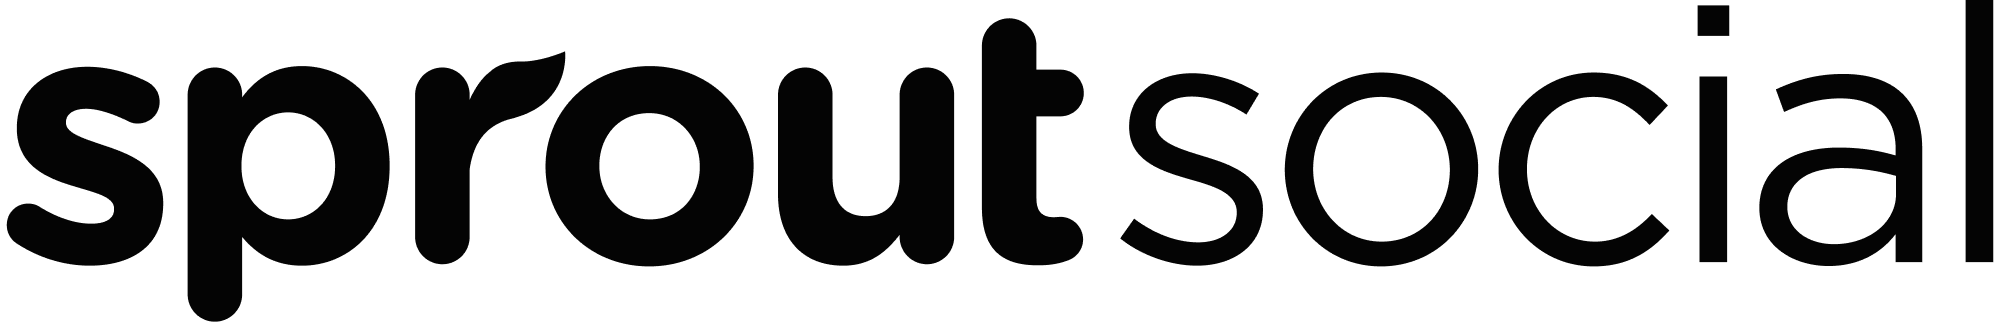 Logo von Sprout Social